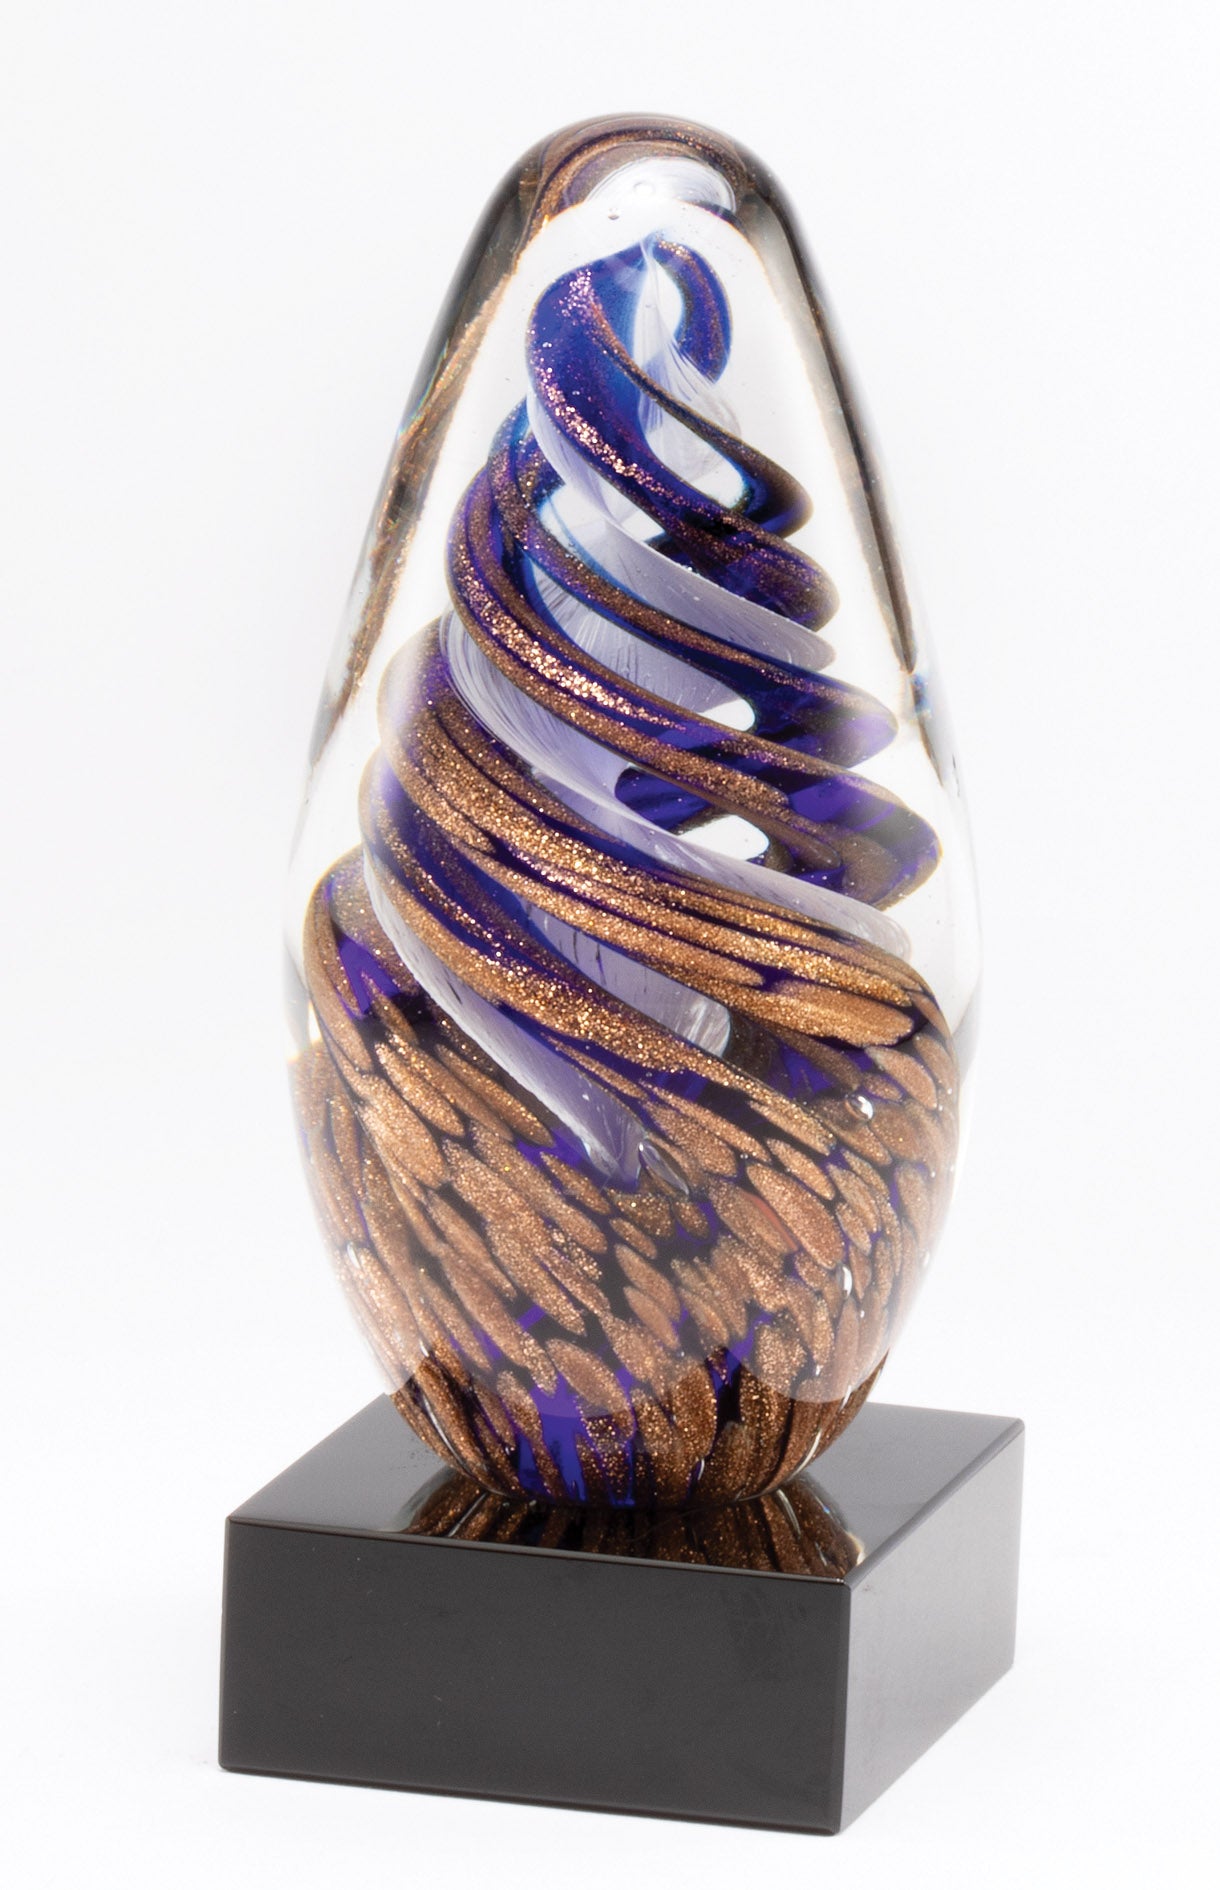 6.75" Art Glass Award